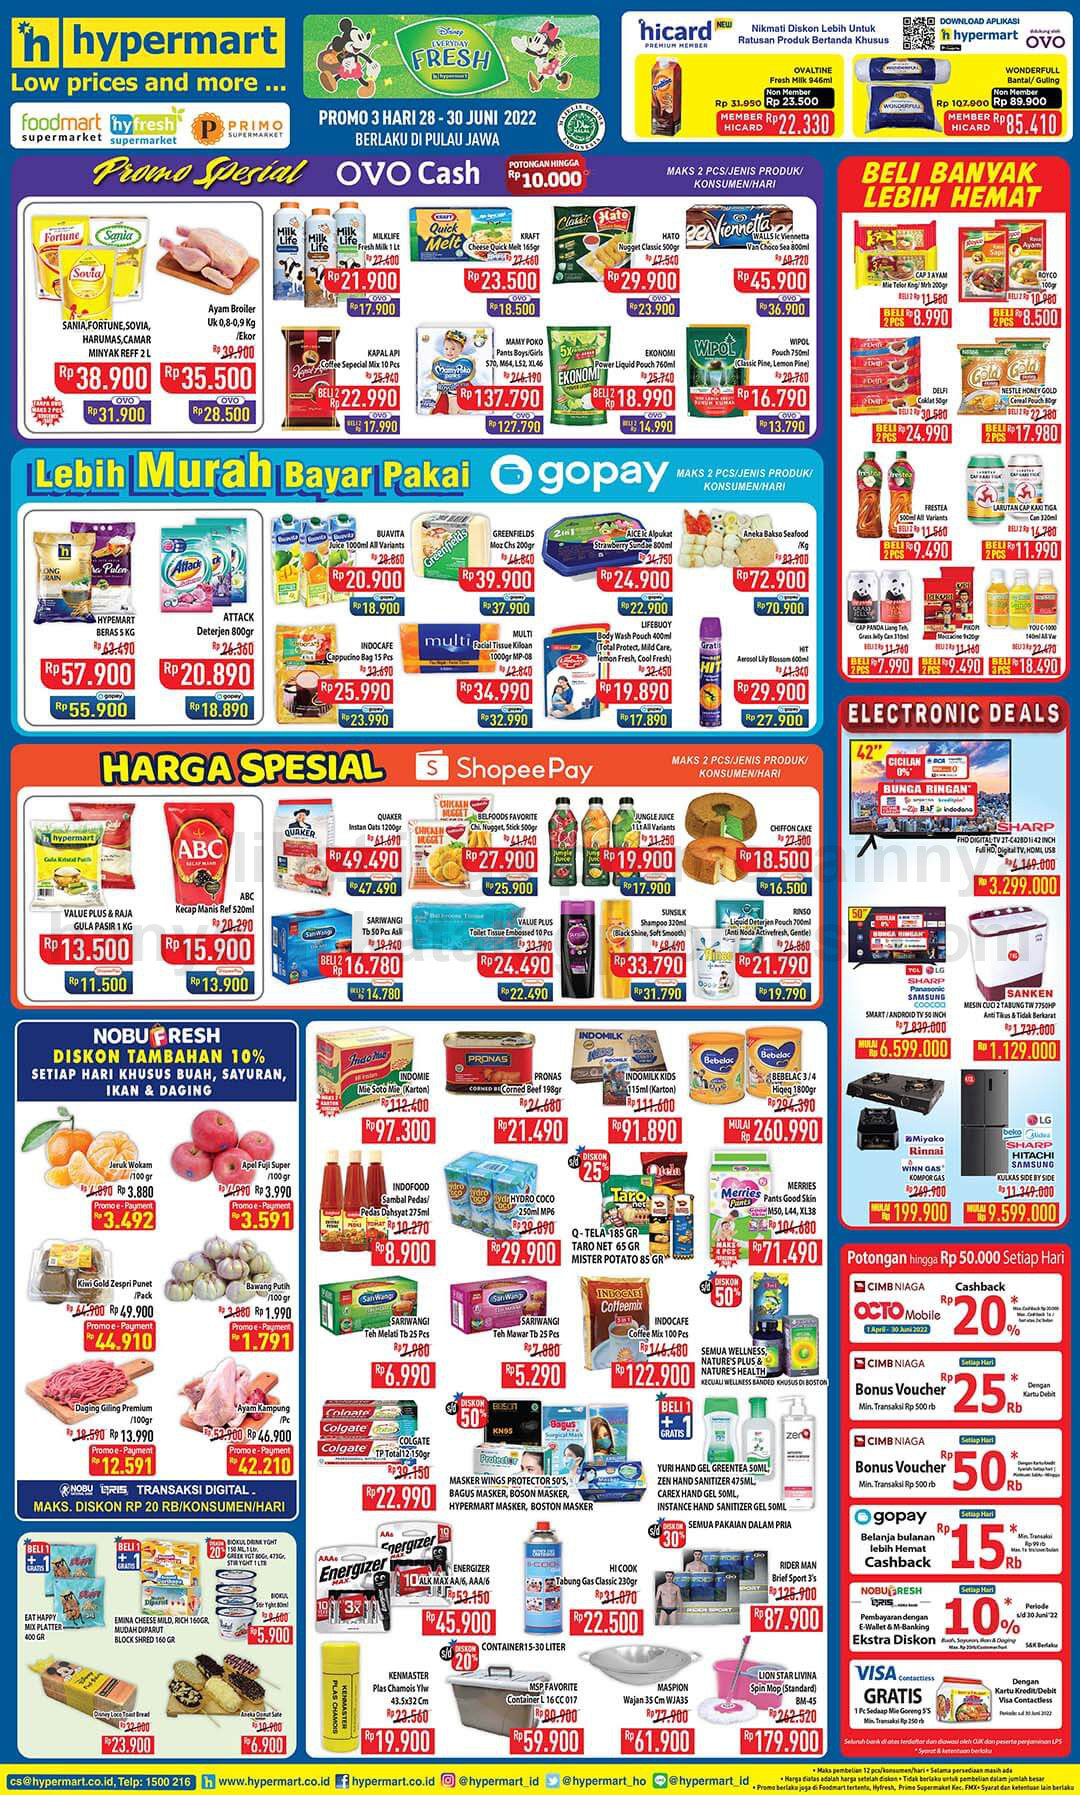 Katalog Hypermart Promo Weekday periode 28-30 JUNI 2022